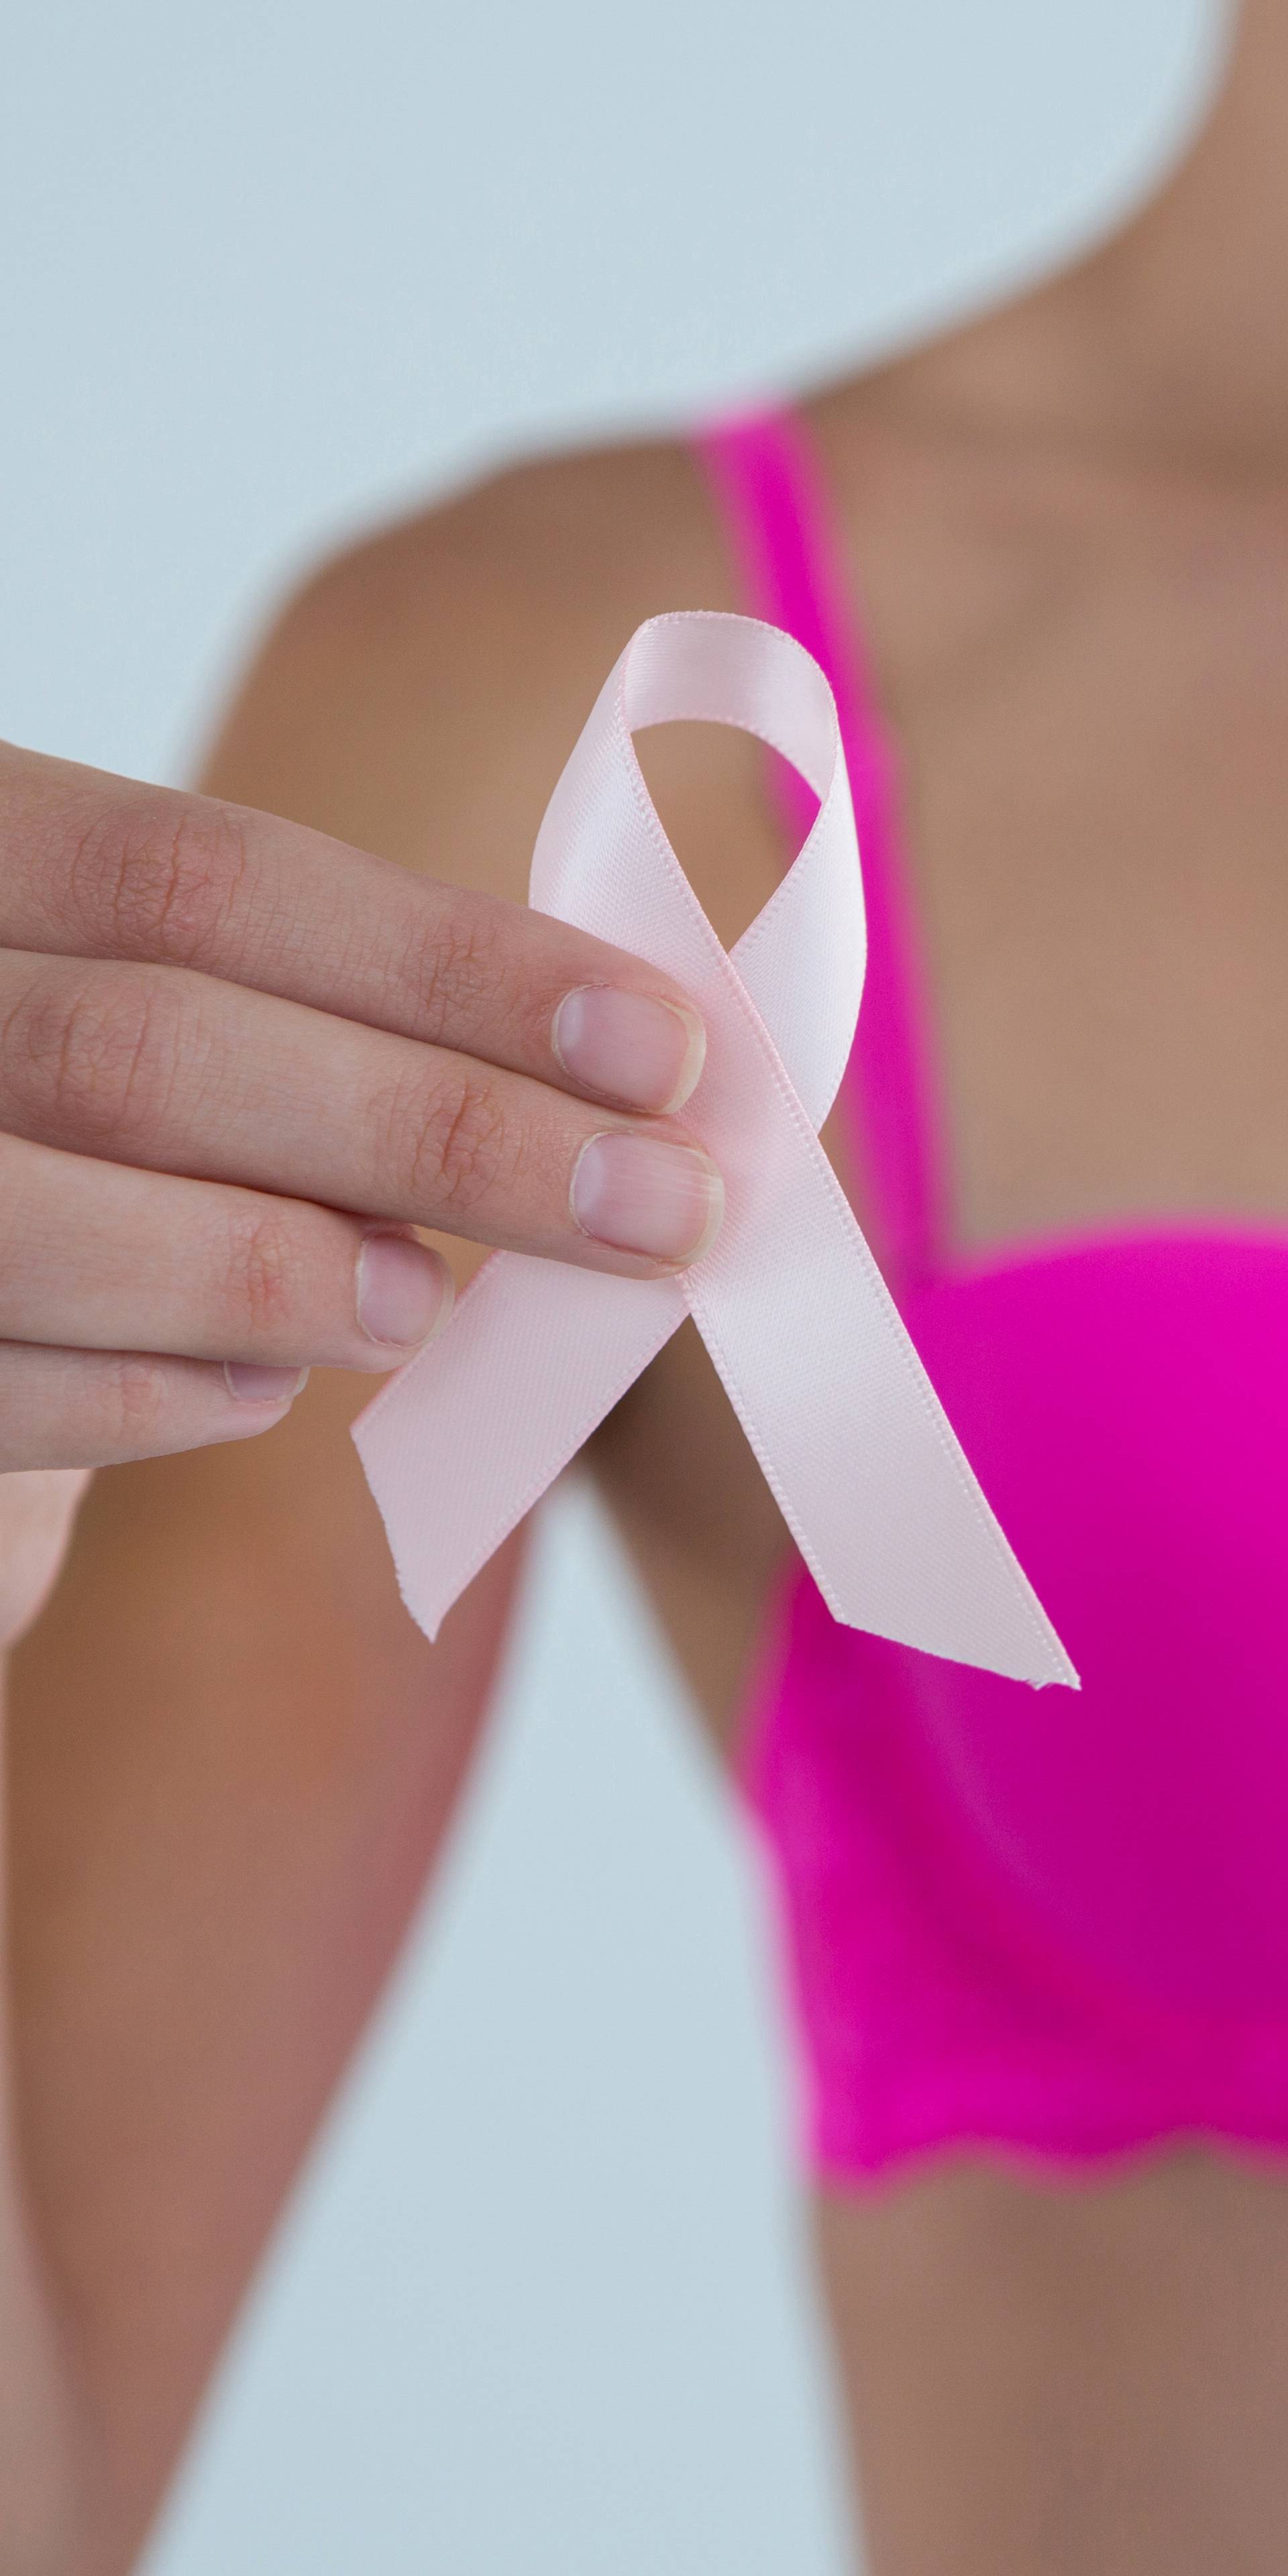 Što žene trebaju znati o raku dojke s 30 i 50 godina života